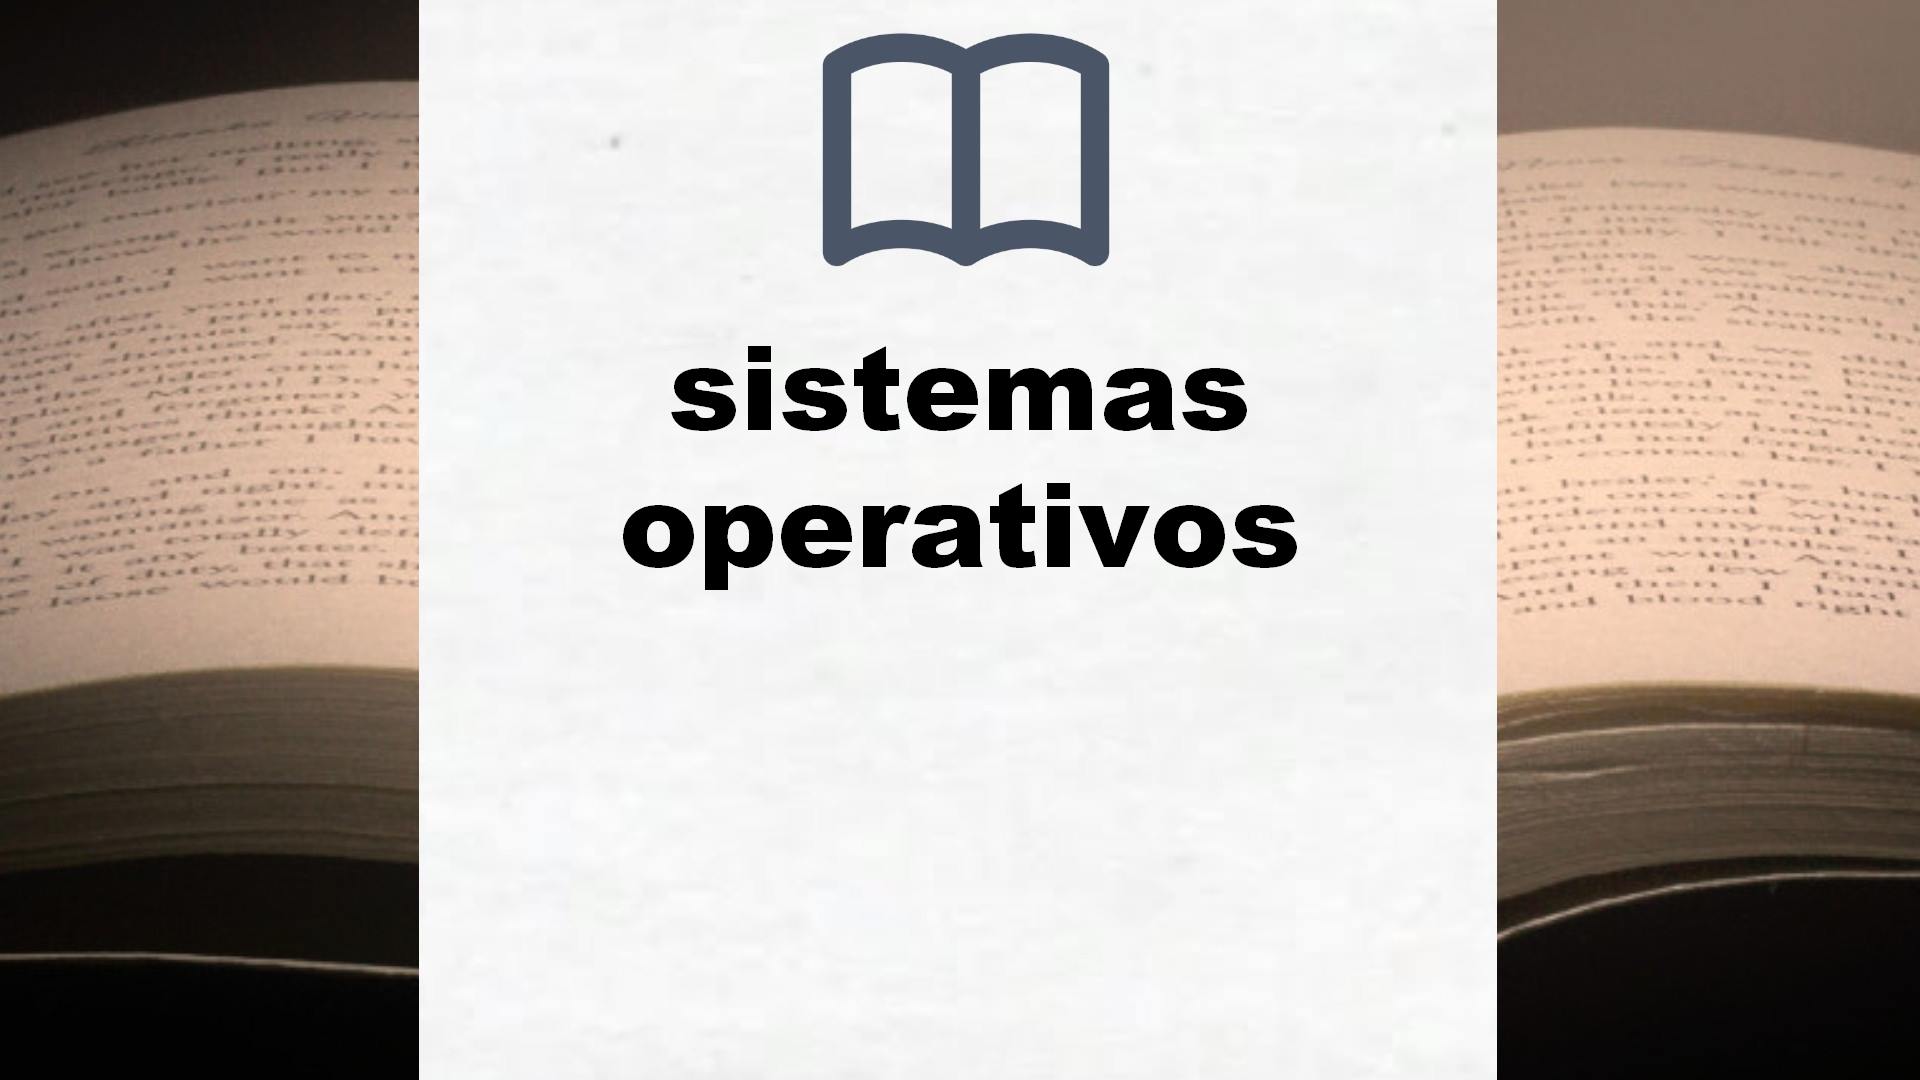 Libros sobre sistemas operativos